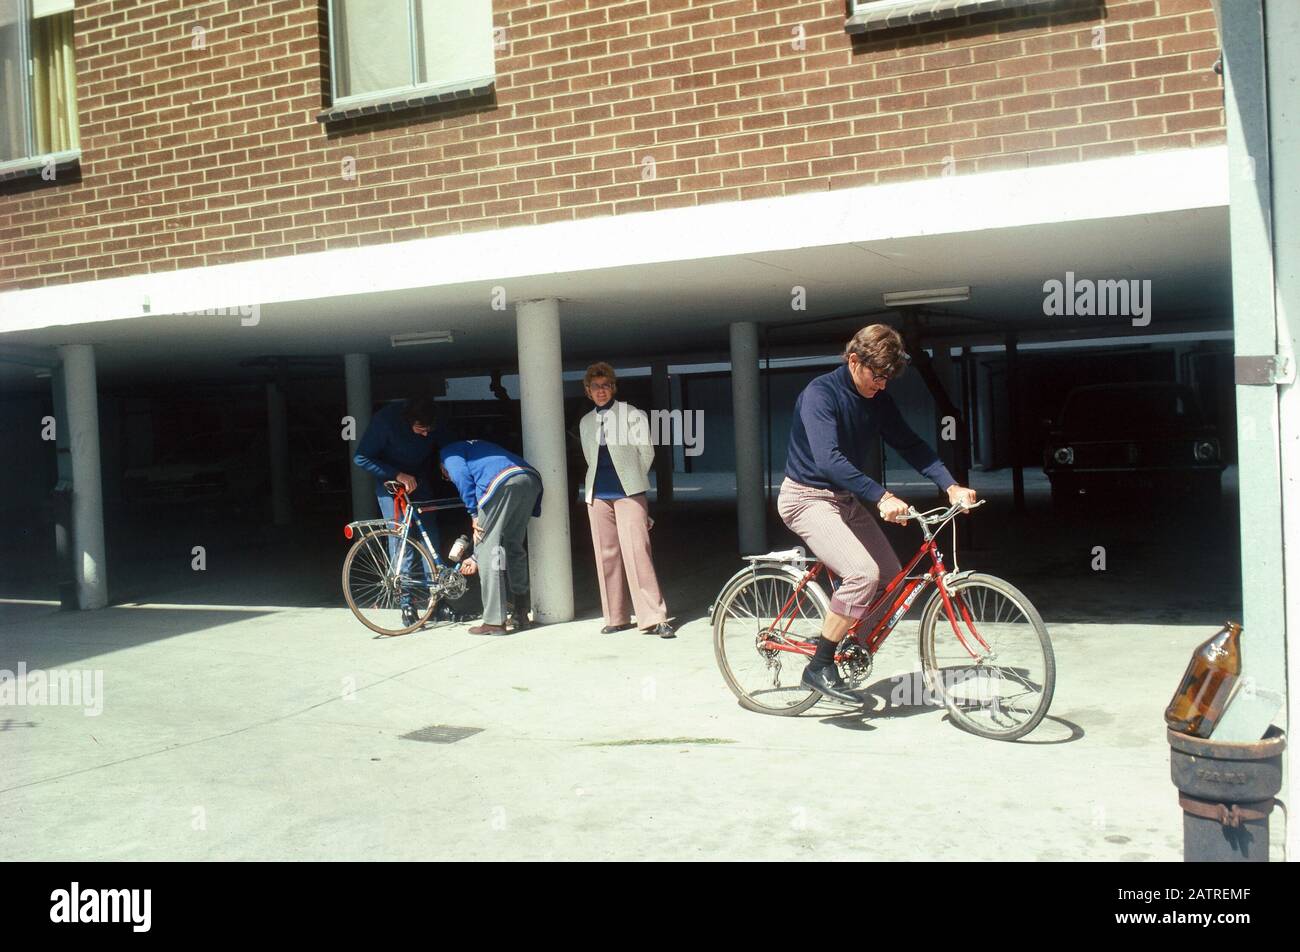 Nakuläres Foto, aufgenommen auf einer analogen 35-mm-Filmtransparenz, glaubte, den Mann in schwarzem Hemd und blauer Denimjeans mit rotem Fahrrad, 1970, darzustellen. Zu den Hauptthemen/Objekten, die erkannt wurden, gehört Das Fahrzeug. () Stockfoto